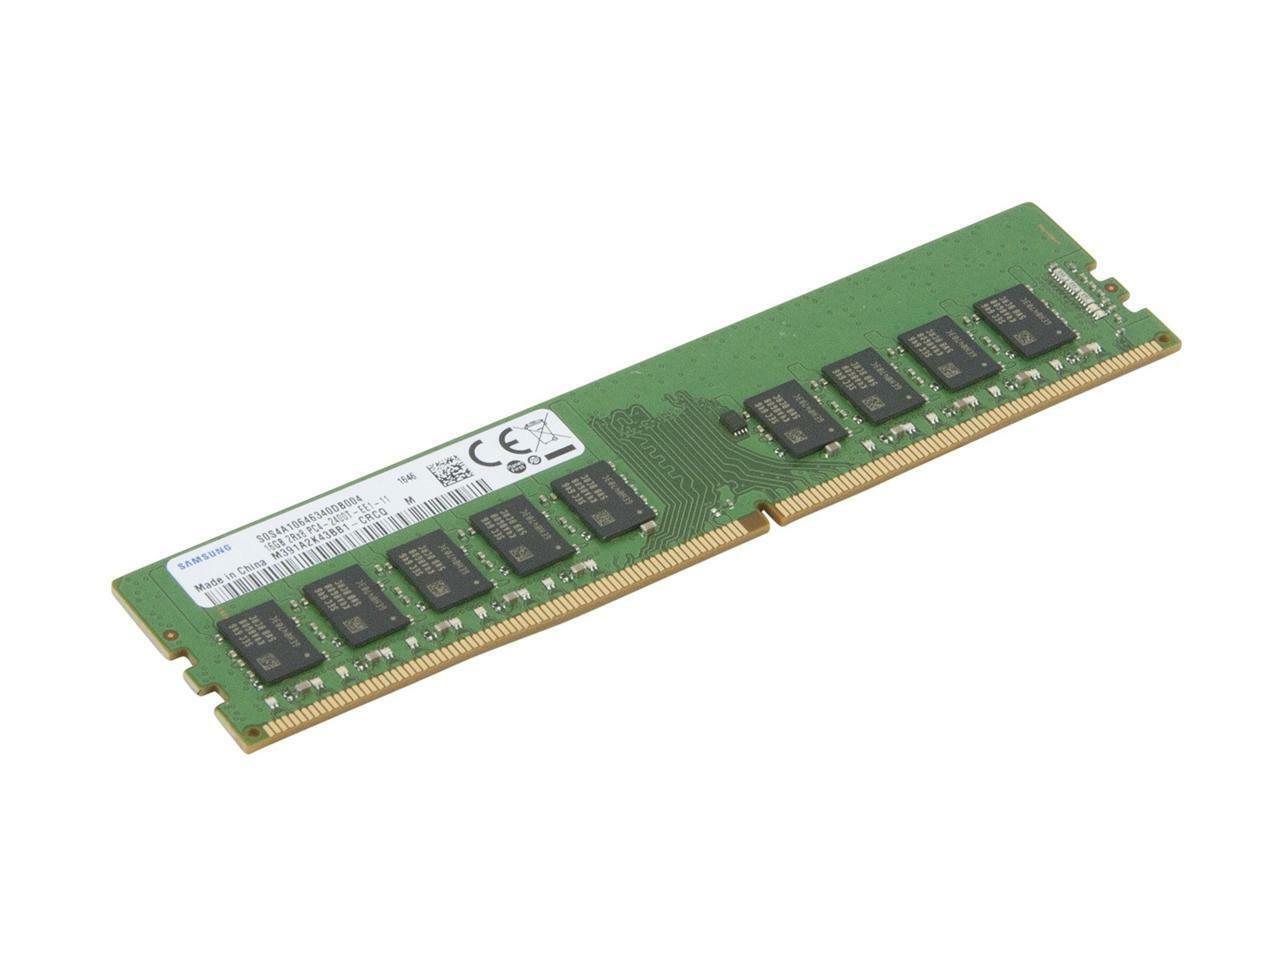 Samsung 16GB DDR4 2400Mhz ECC UDIMM CL17 Samsung Server Memory M391A2K43BB1-CRC